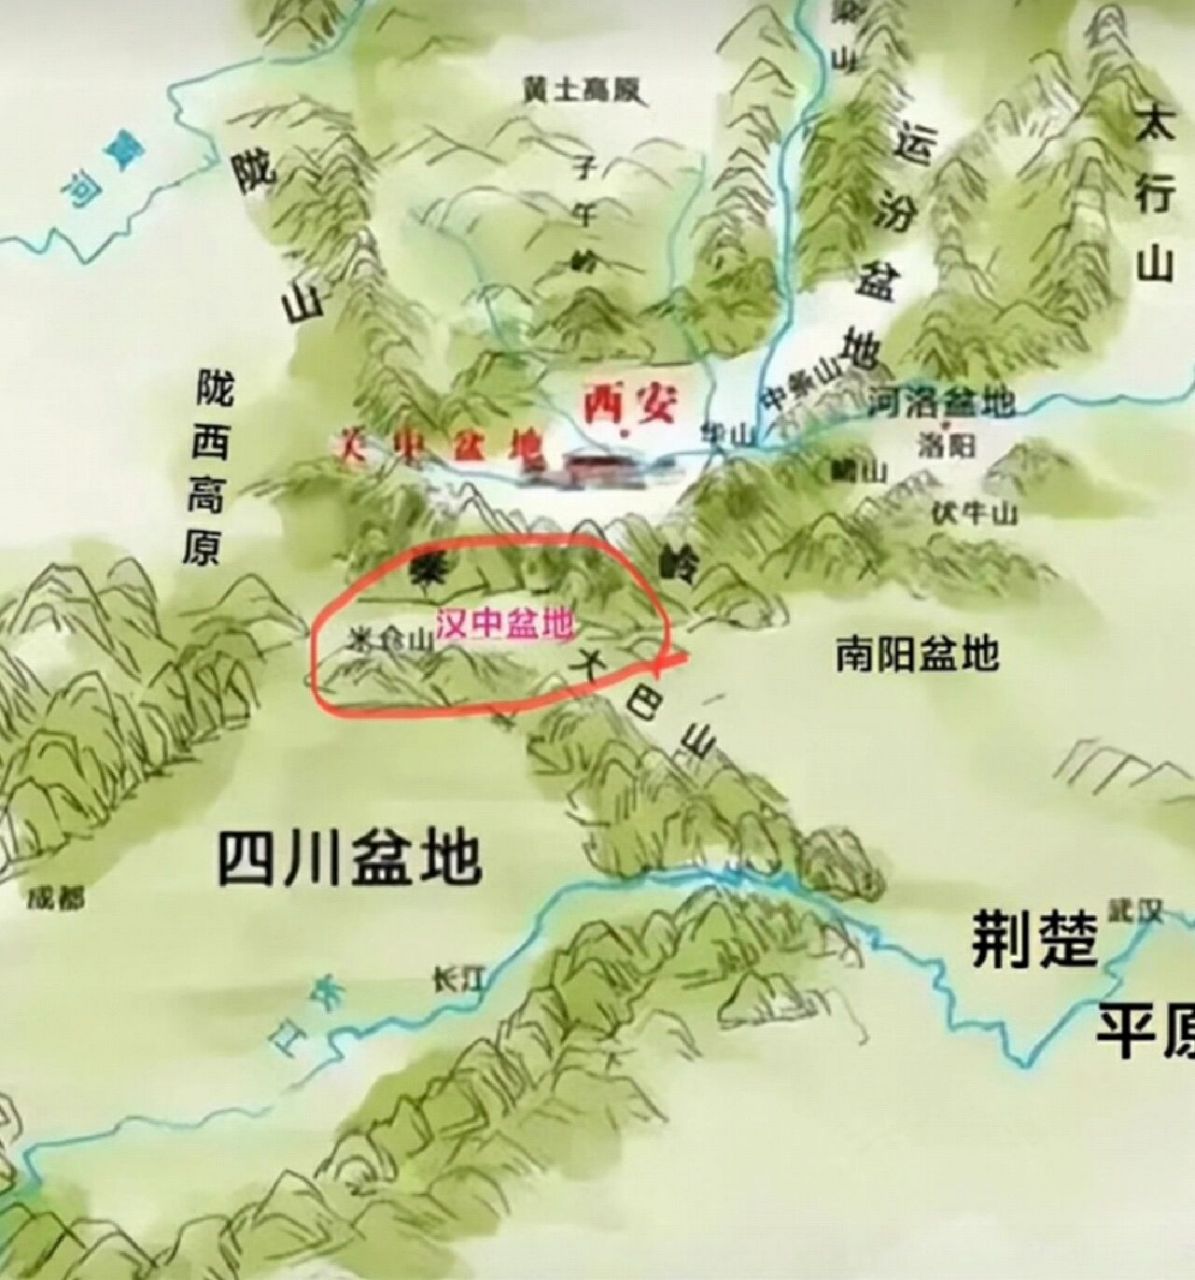 汉中盆地为什么如此重要,看看地图就知道了